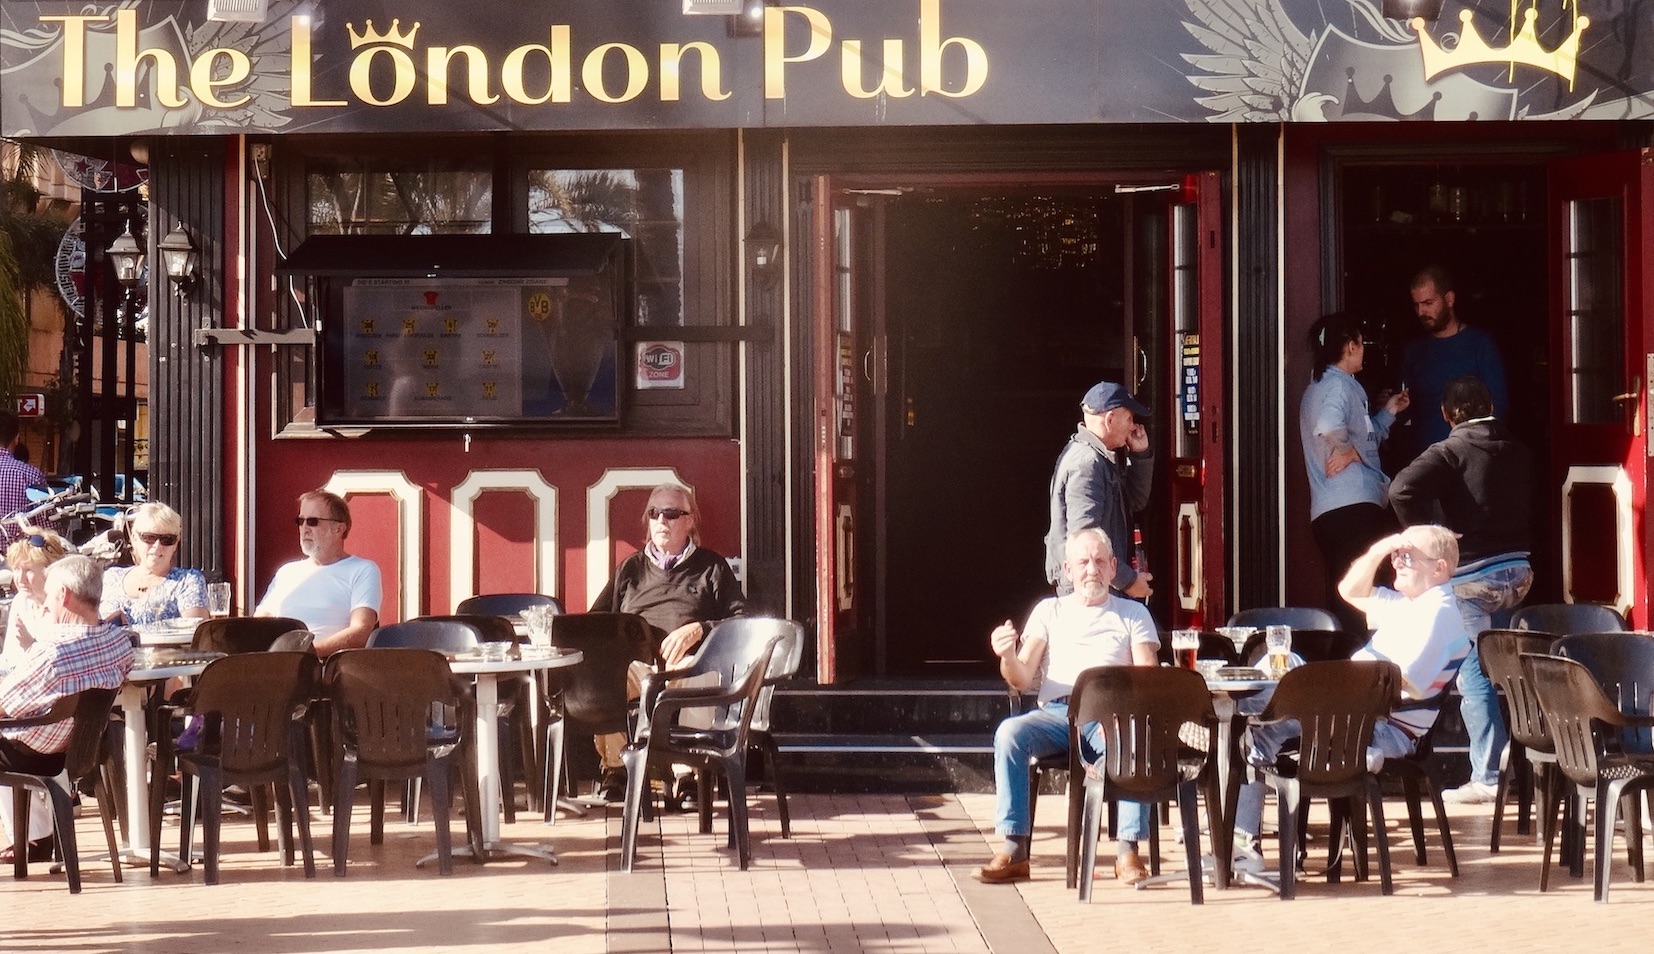 The London Pub Fuengirola Costa del Sol.